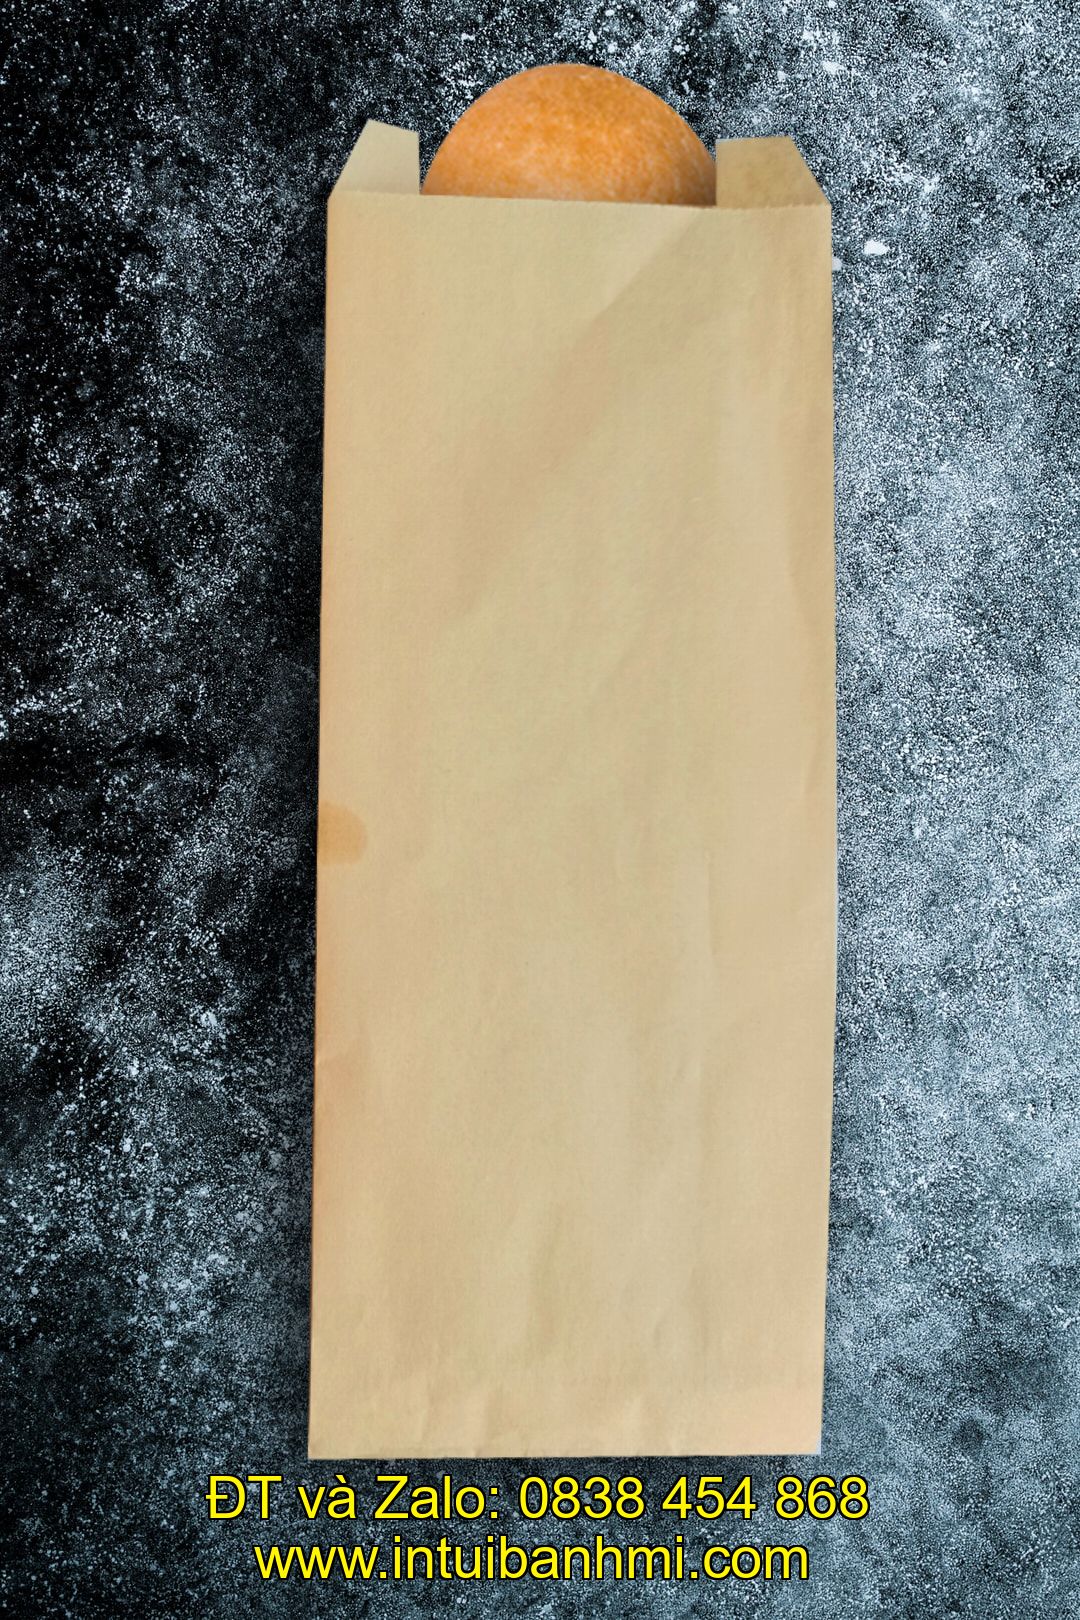 Lợi ích khi sử dụng túi giấy kraft đựng bánh mì